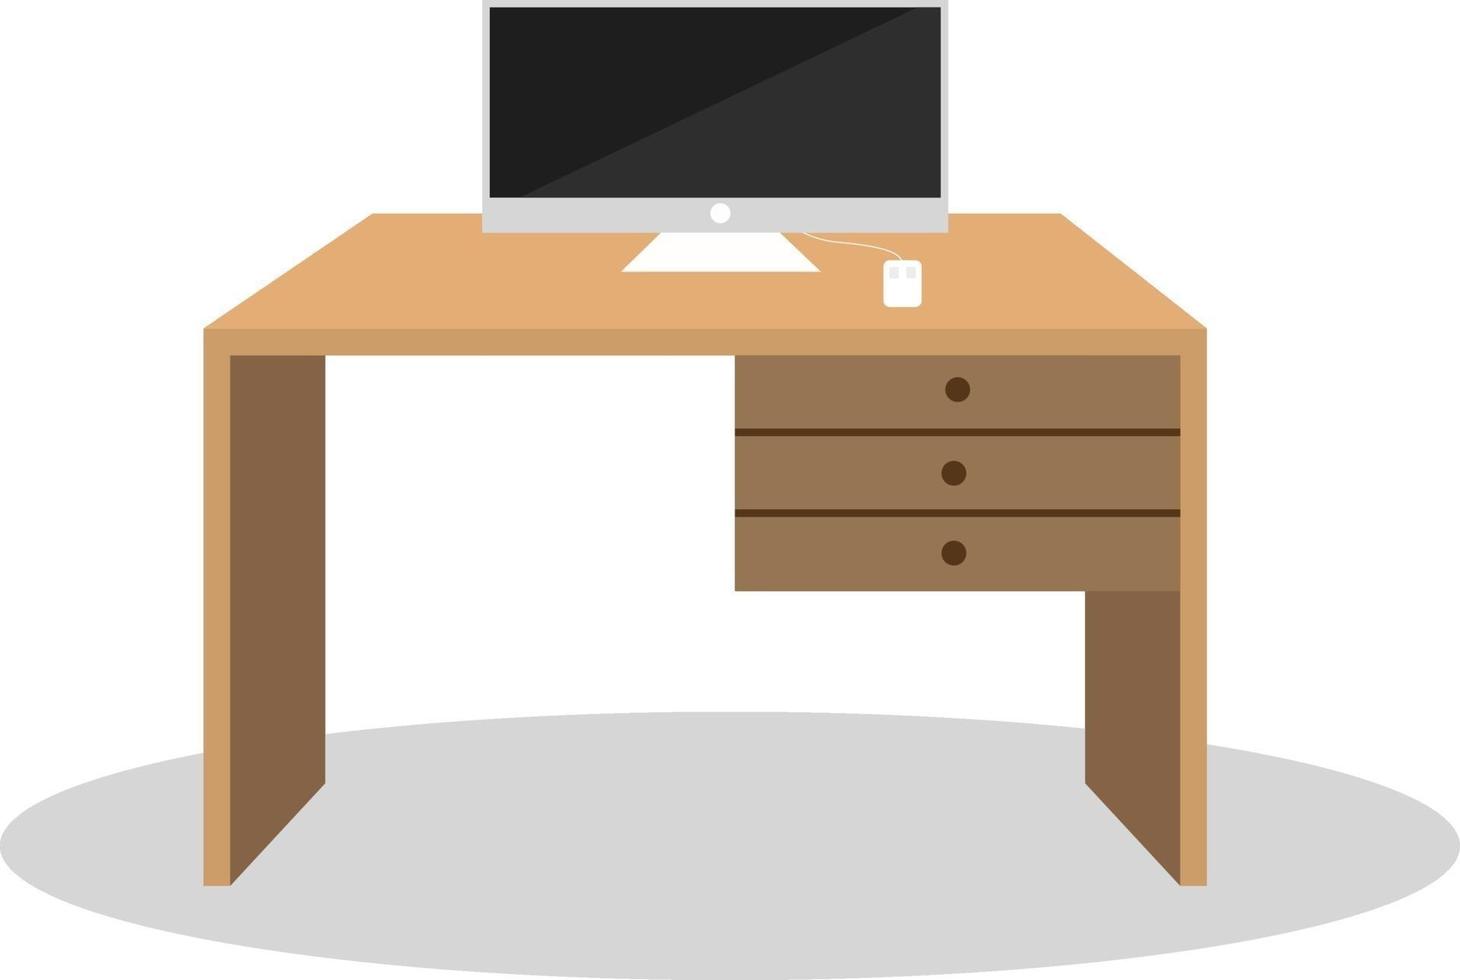 Schreibtisch mit Monitor, Illustration, Vektor auf weißem Hintergrund.